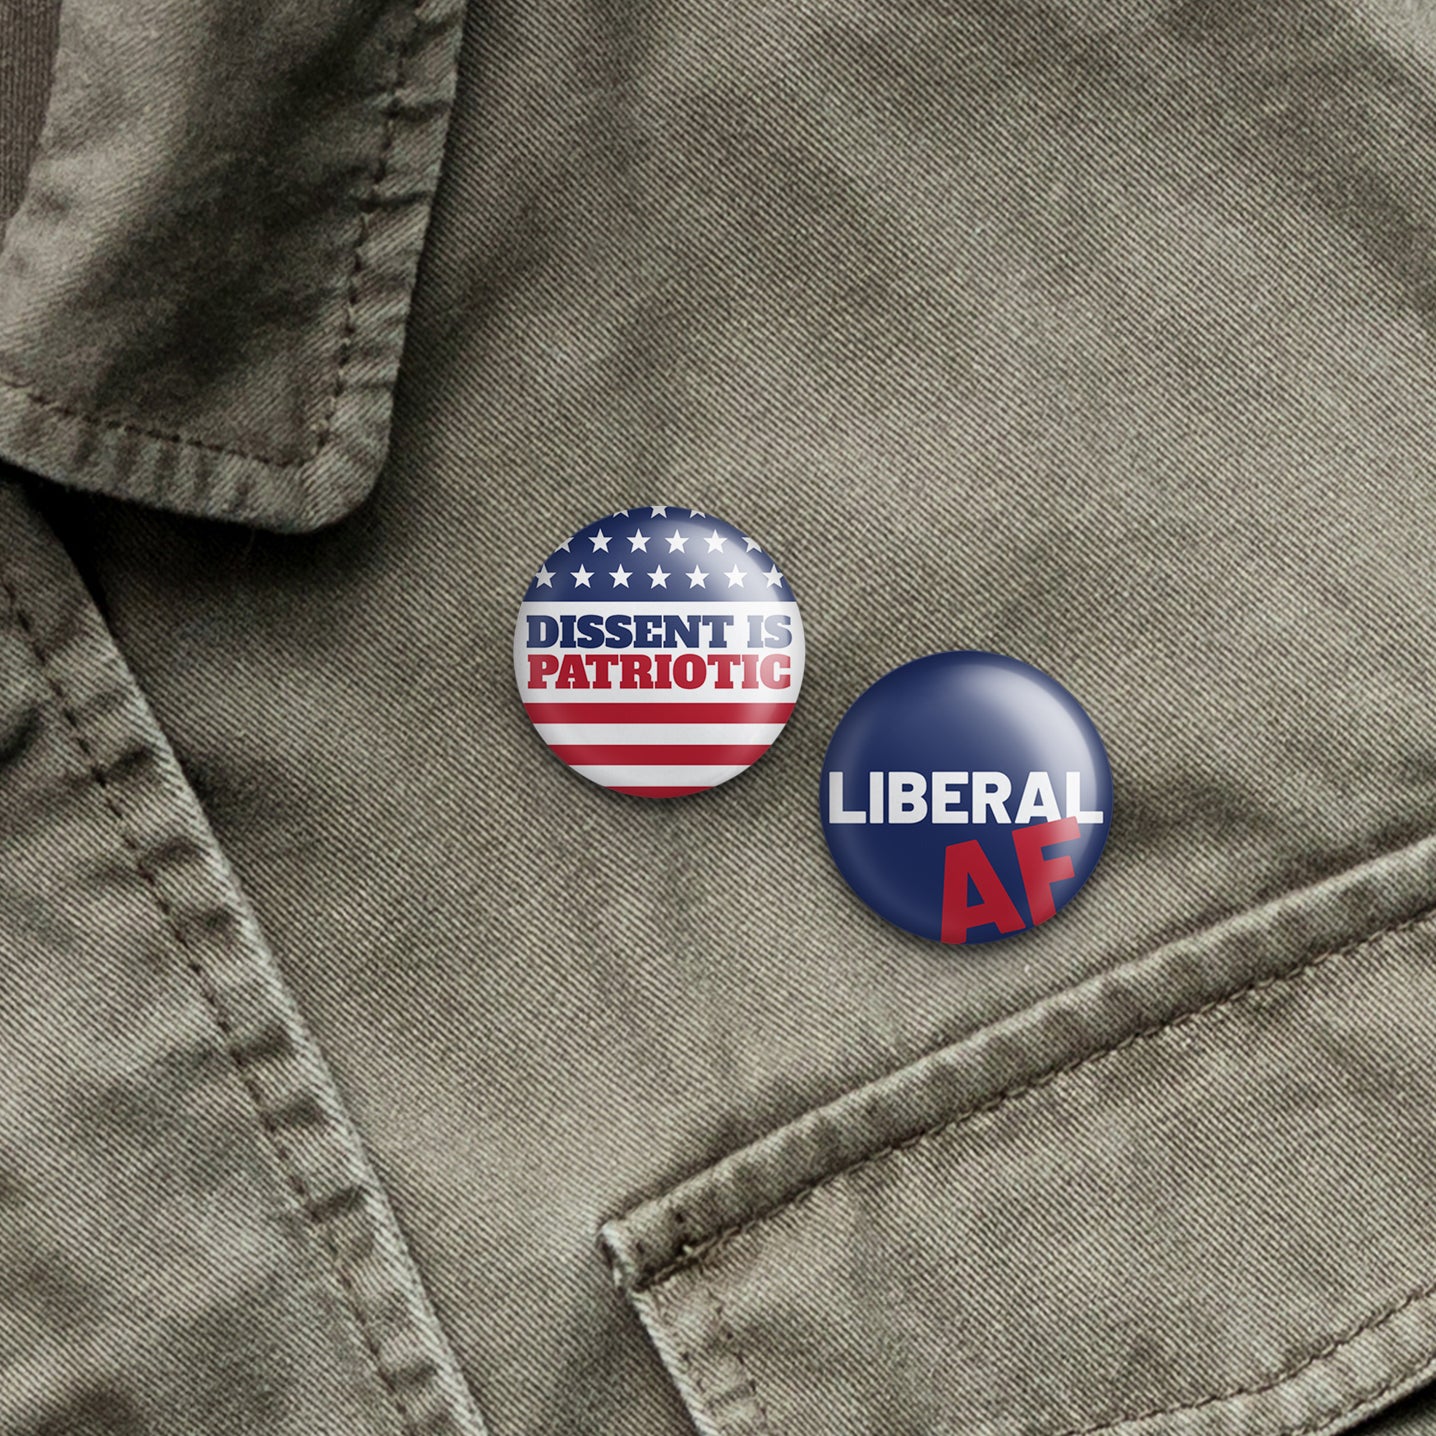 liberal af buttons on denim jacket